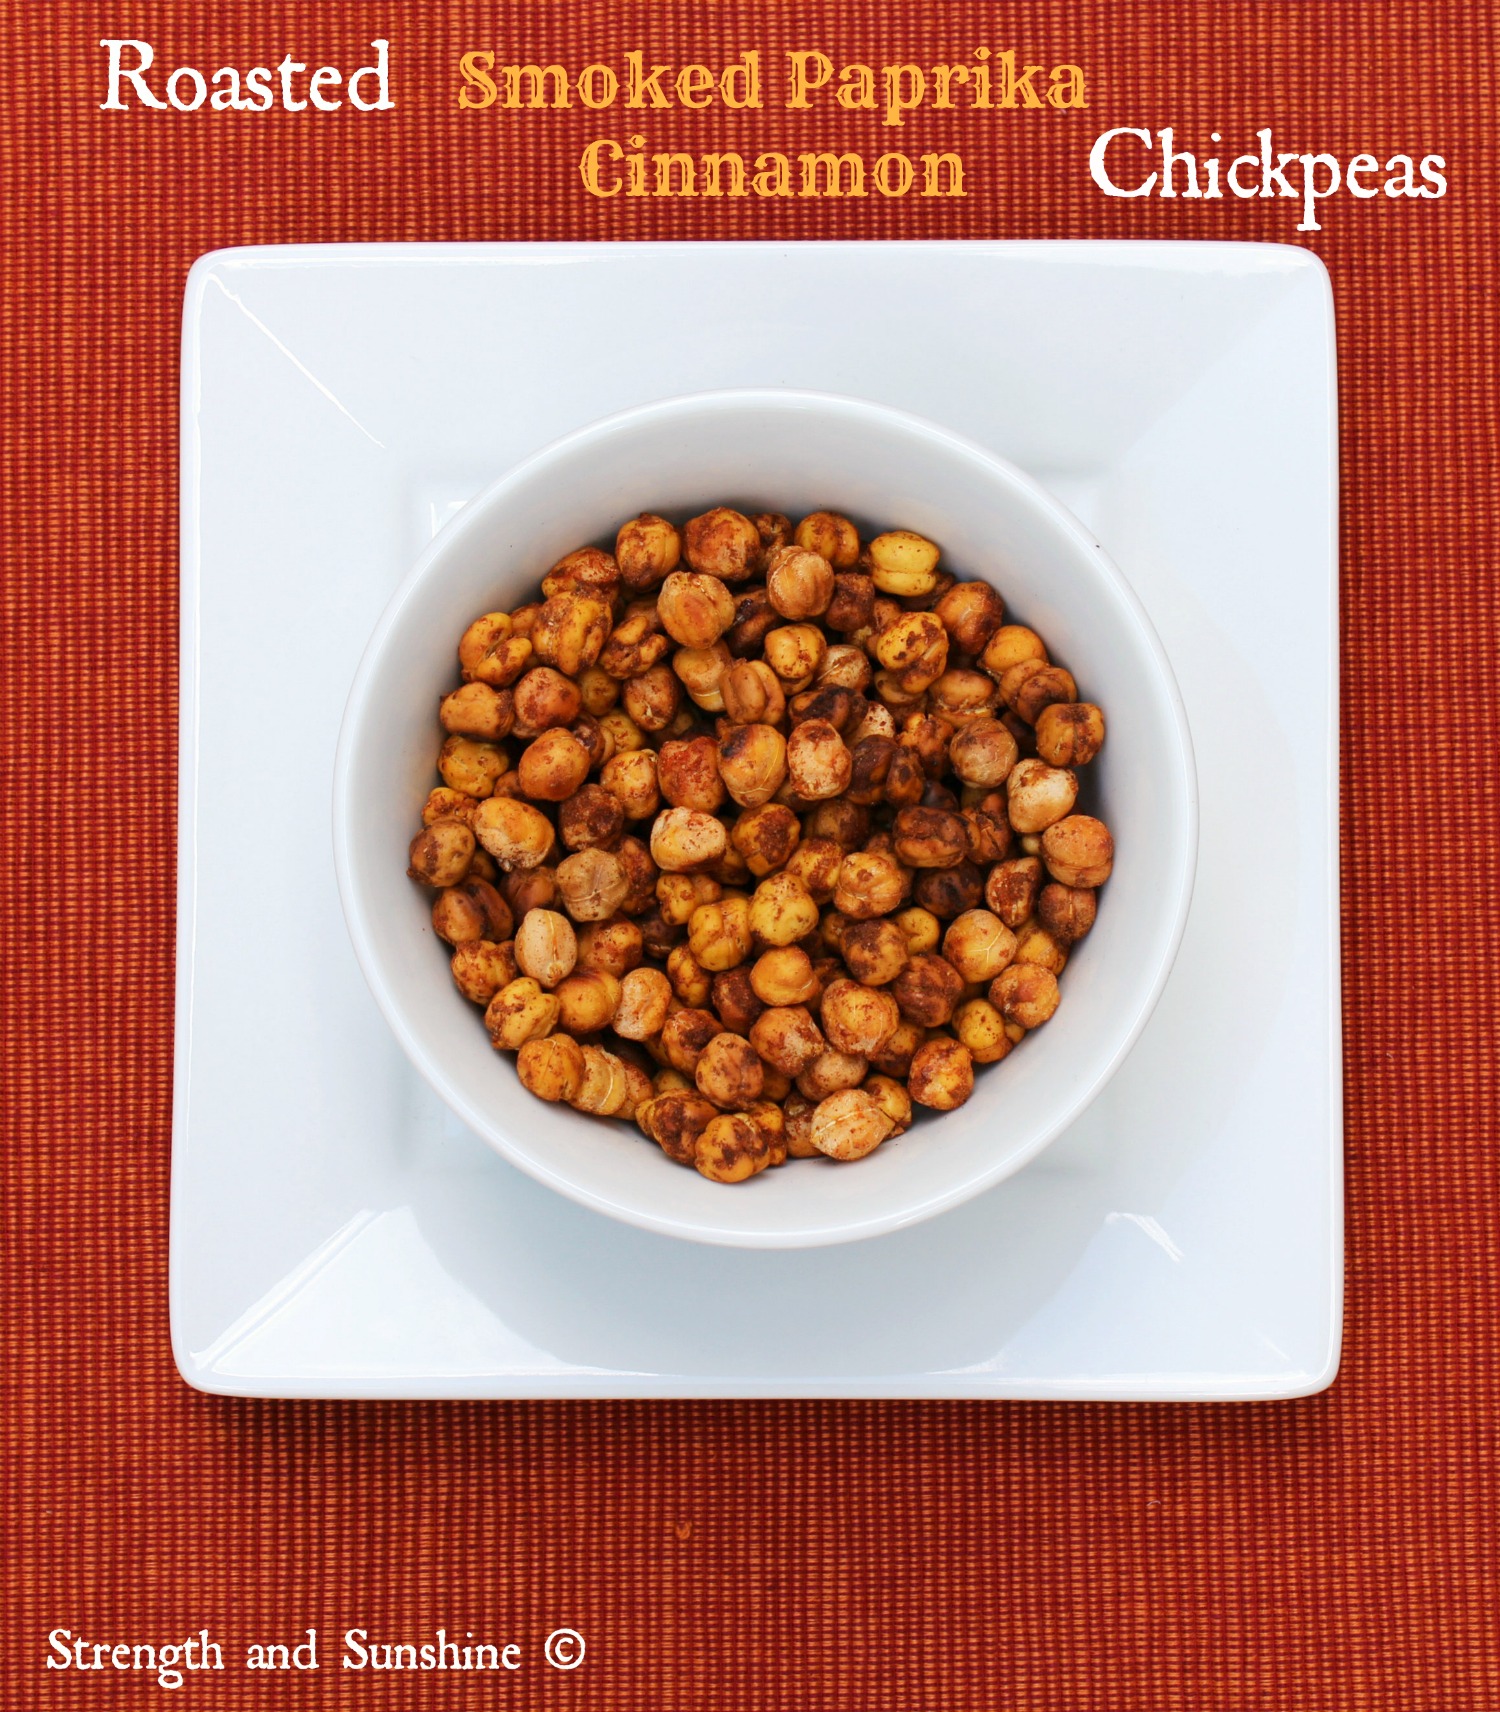 Roasted Smoked Paprika Cinnamon Chickpeas | Strength and Sunshine @RebeccaGF666 #chickpeas #glutenfree #vegan #smokedpaprika #cinnamon #snacks